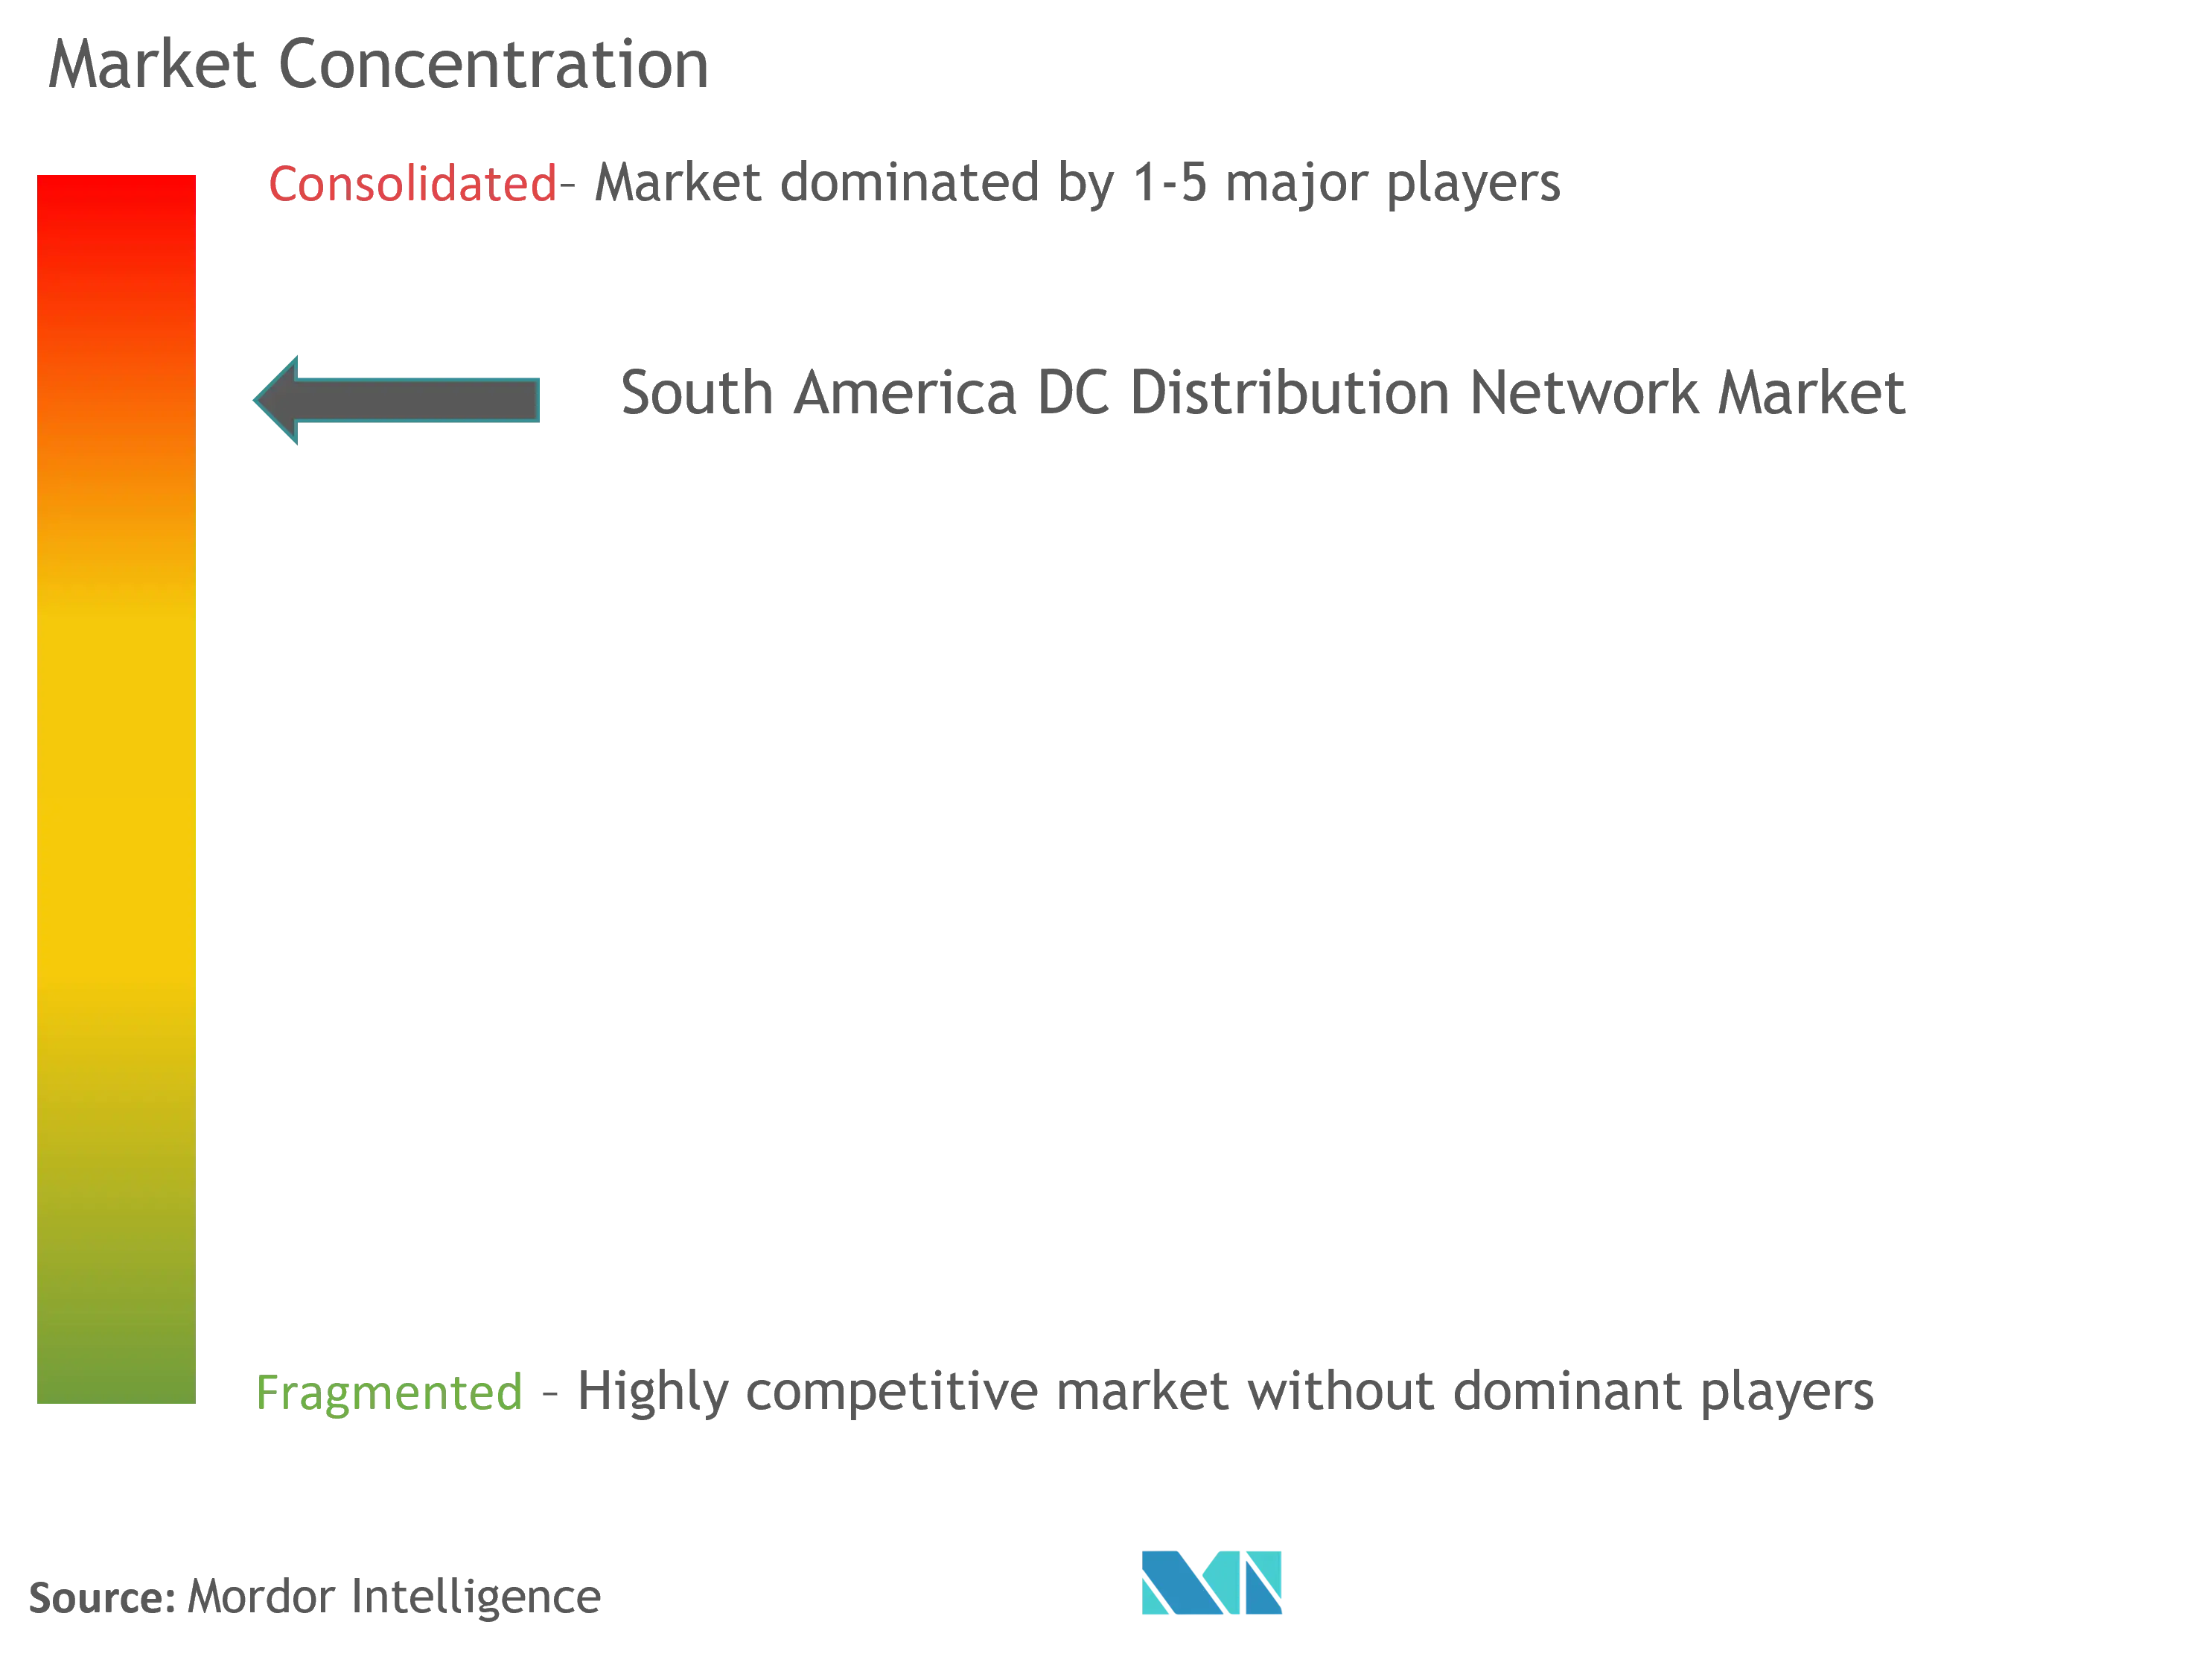 南米のDC配電ネットワーク市場の集中